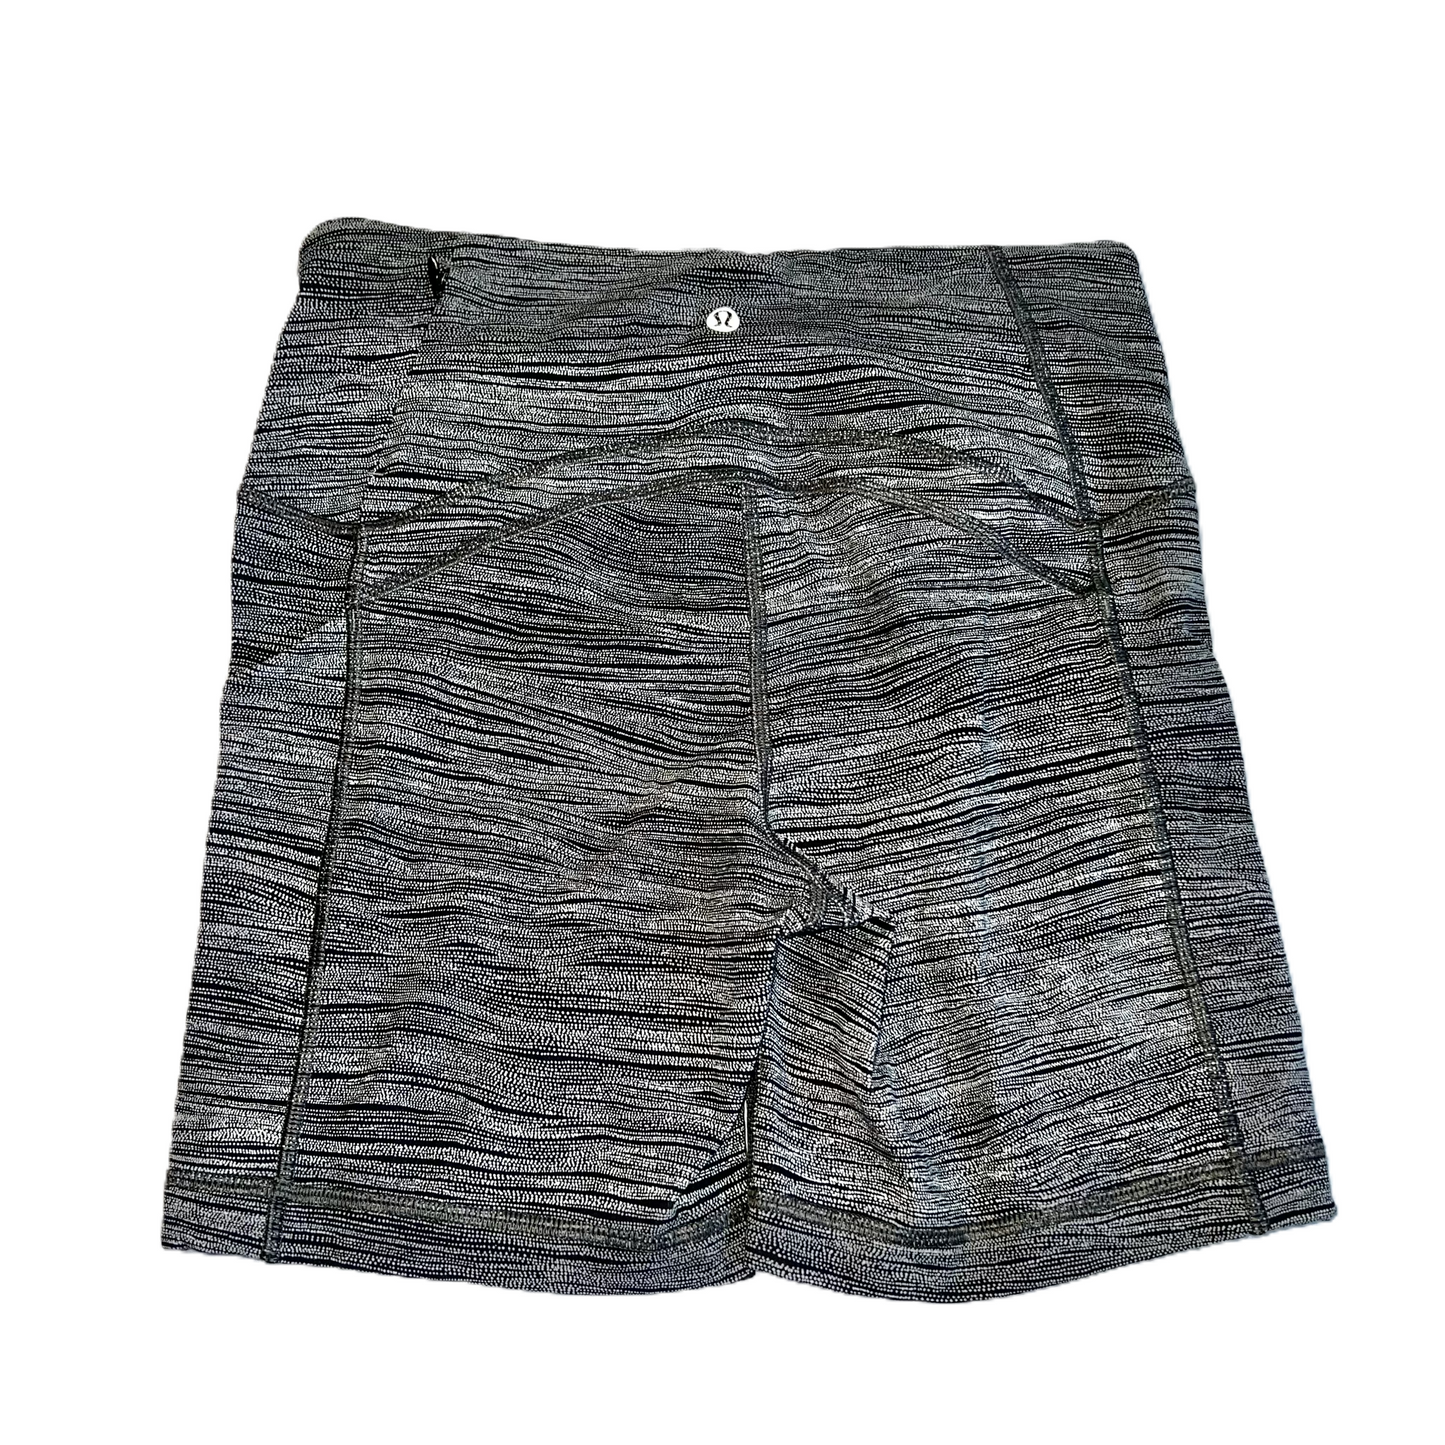 Black & White Athletic Shorts By Lululemon, Size: S